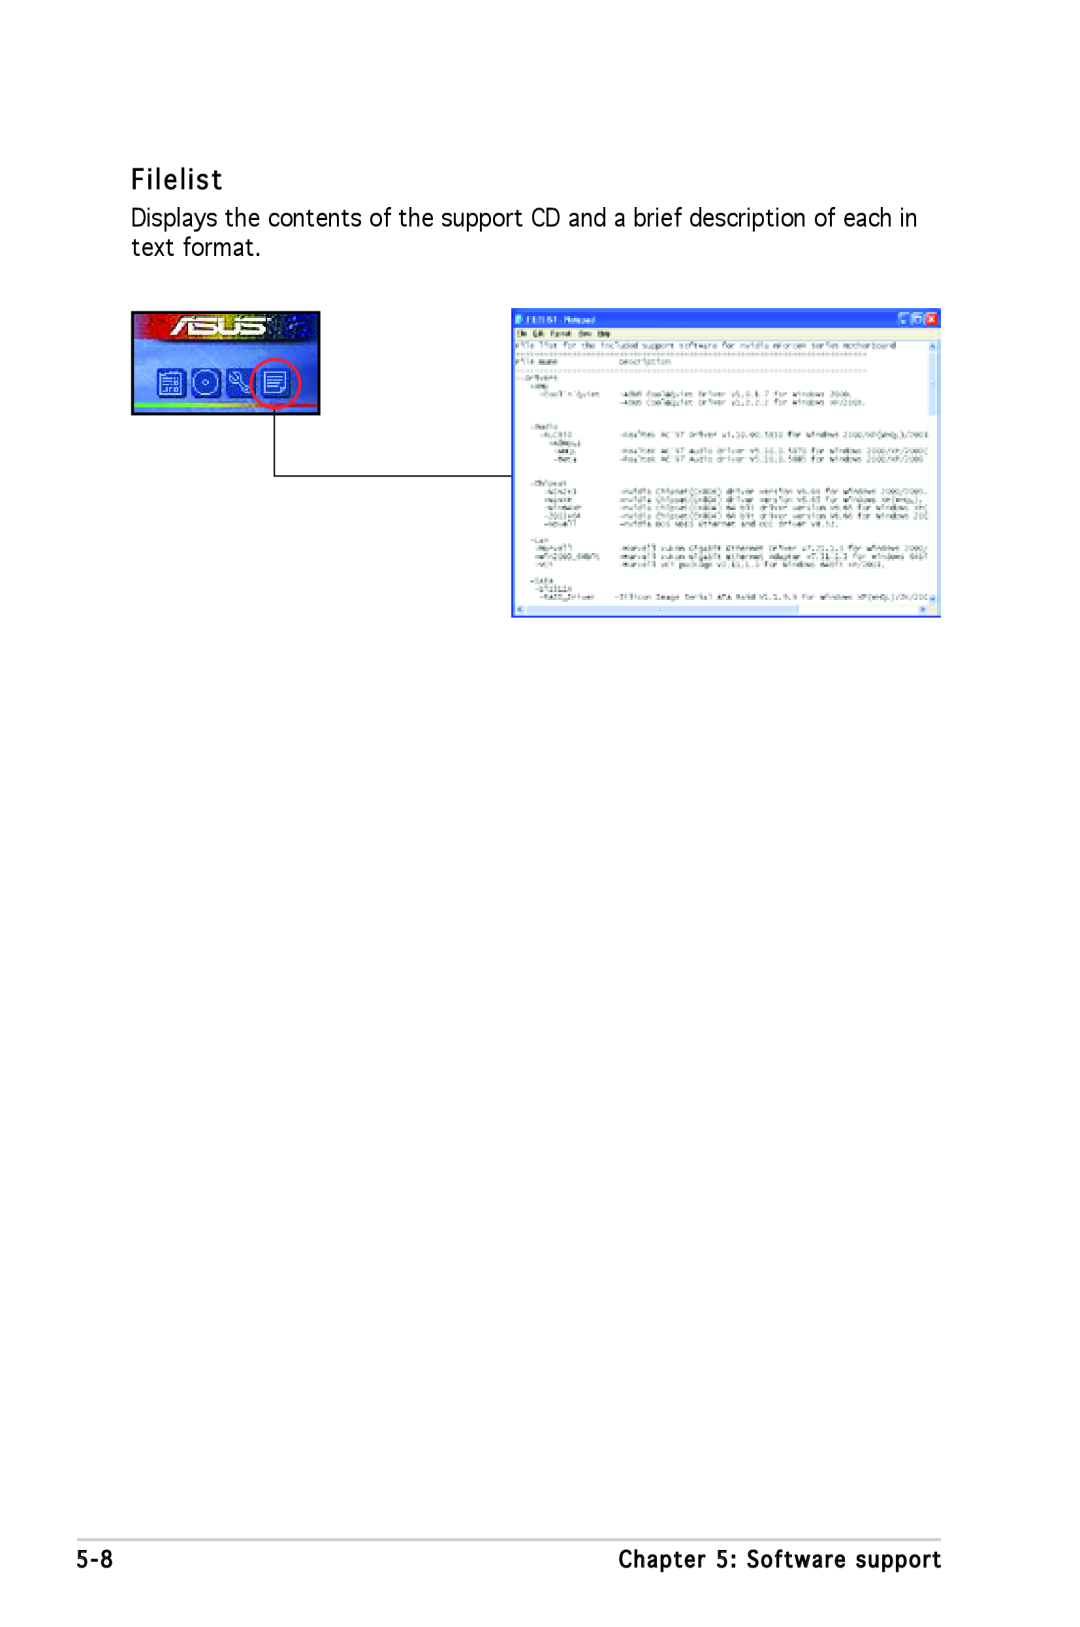 Asus A8N-SLI SE manual Filelist 